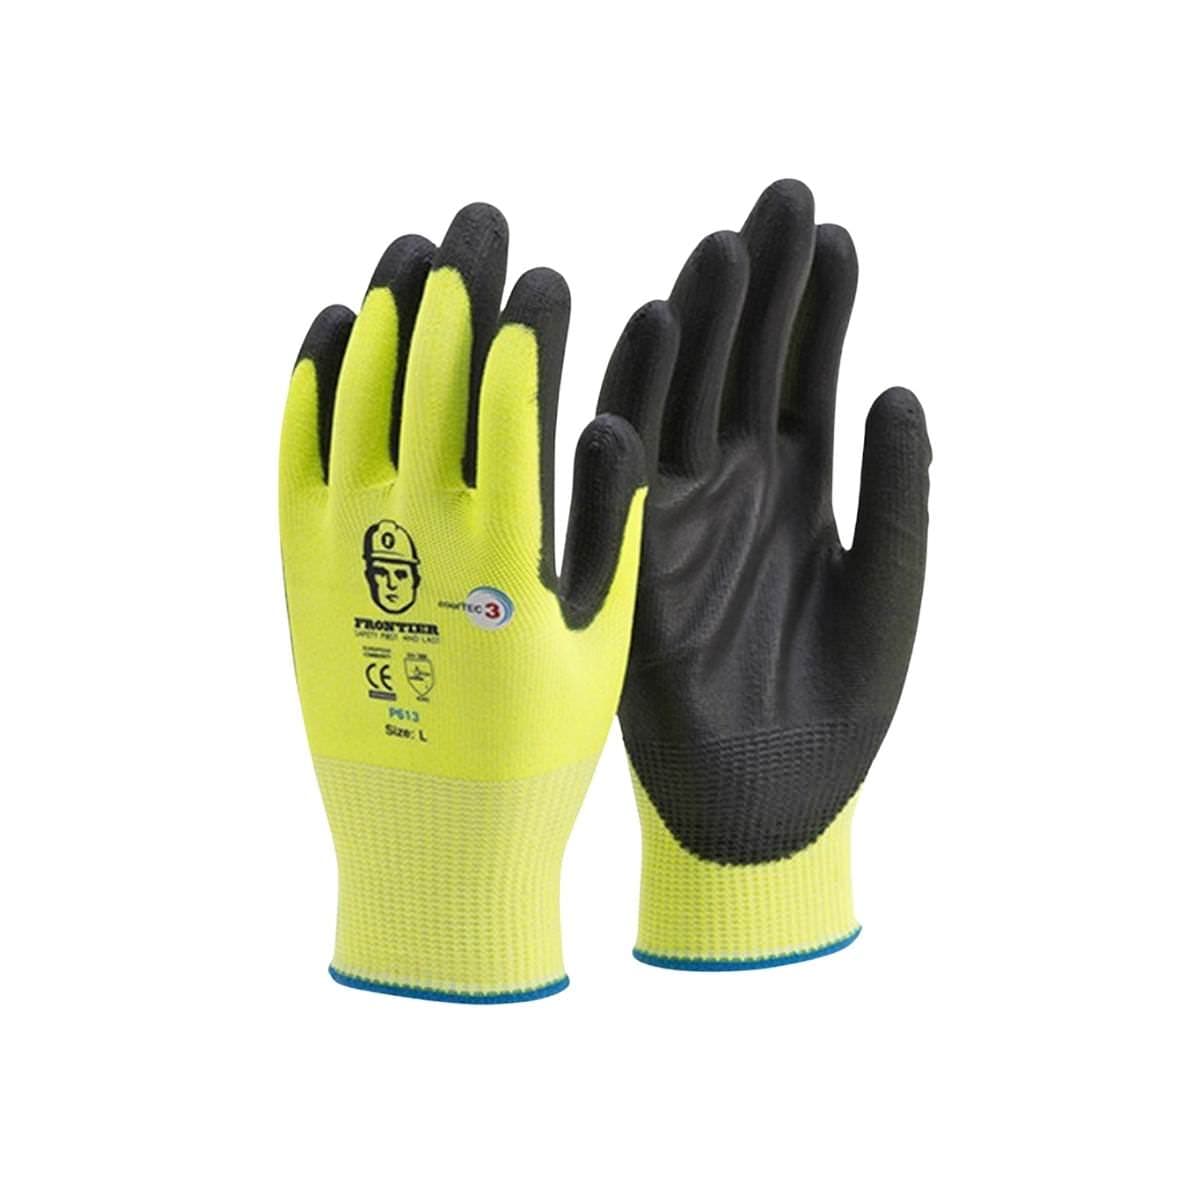 Glove Frontier Cooltec3 PU Coat. C3 HiVis (Pair)